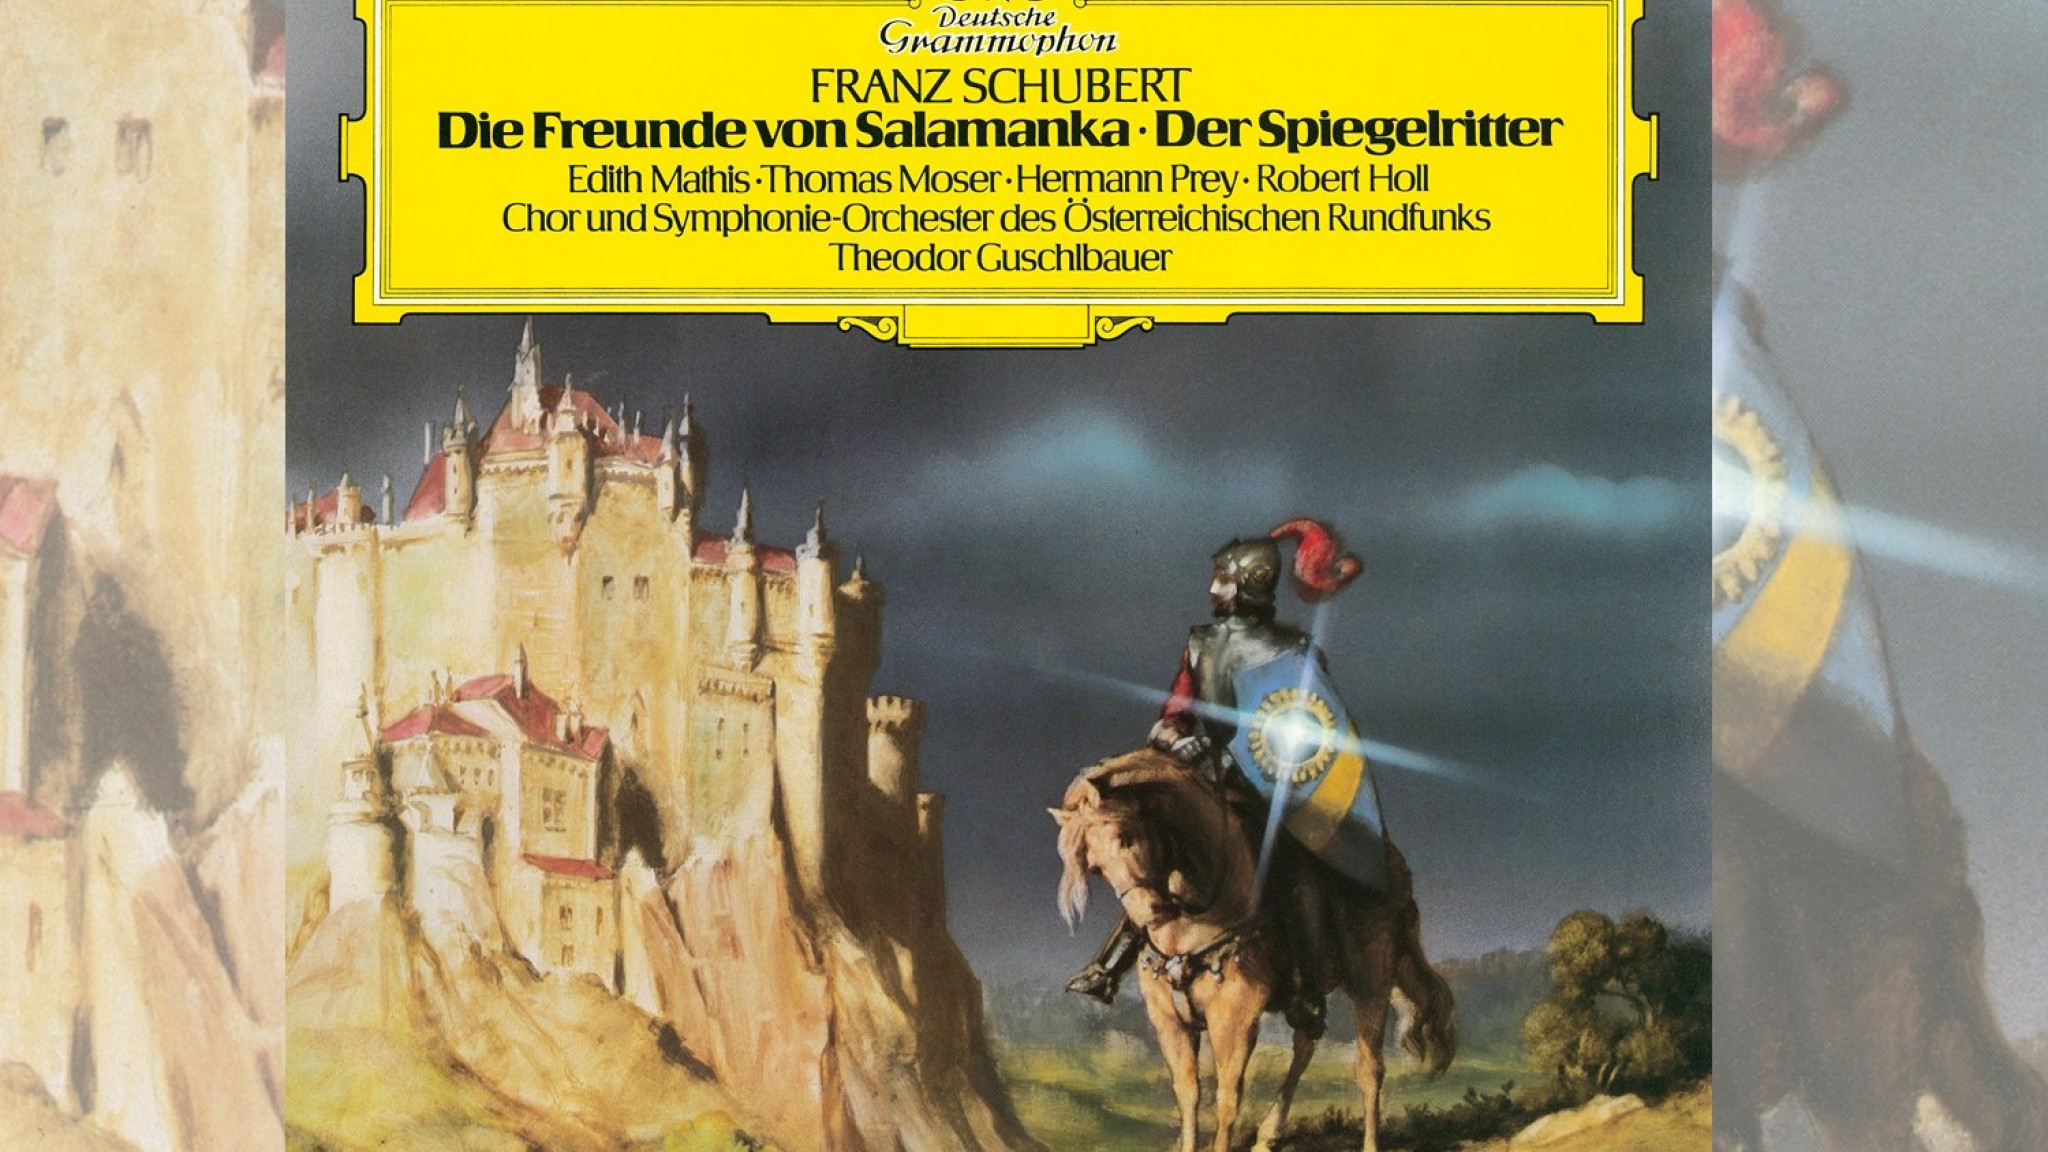 Opernschätze von Franz Schubert – Seltene Aufnahme der beiden Jugendwerke "Die Freunde von Salamanka" und "Der Spiegelritter" erscheint erstmals digital